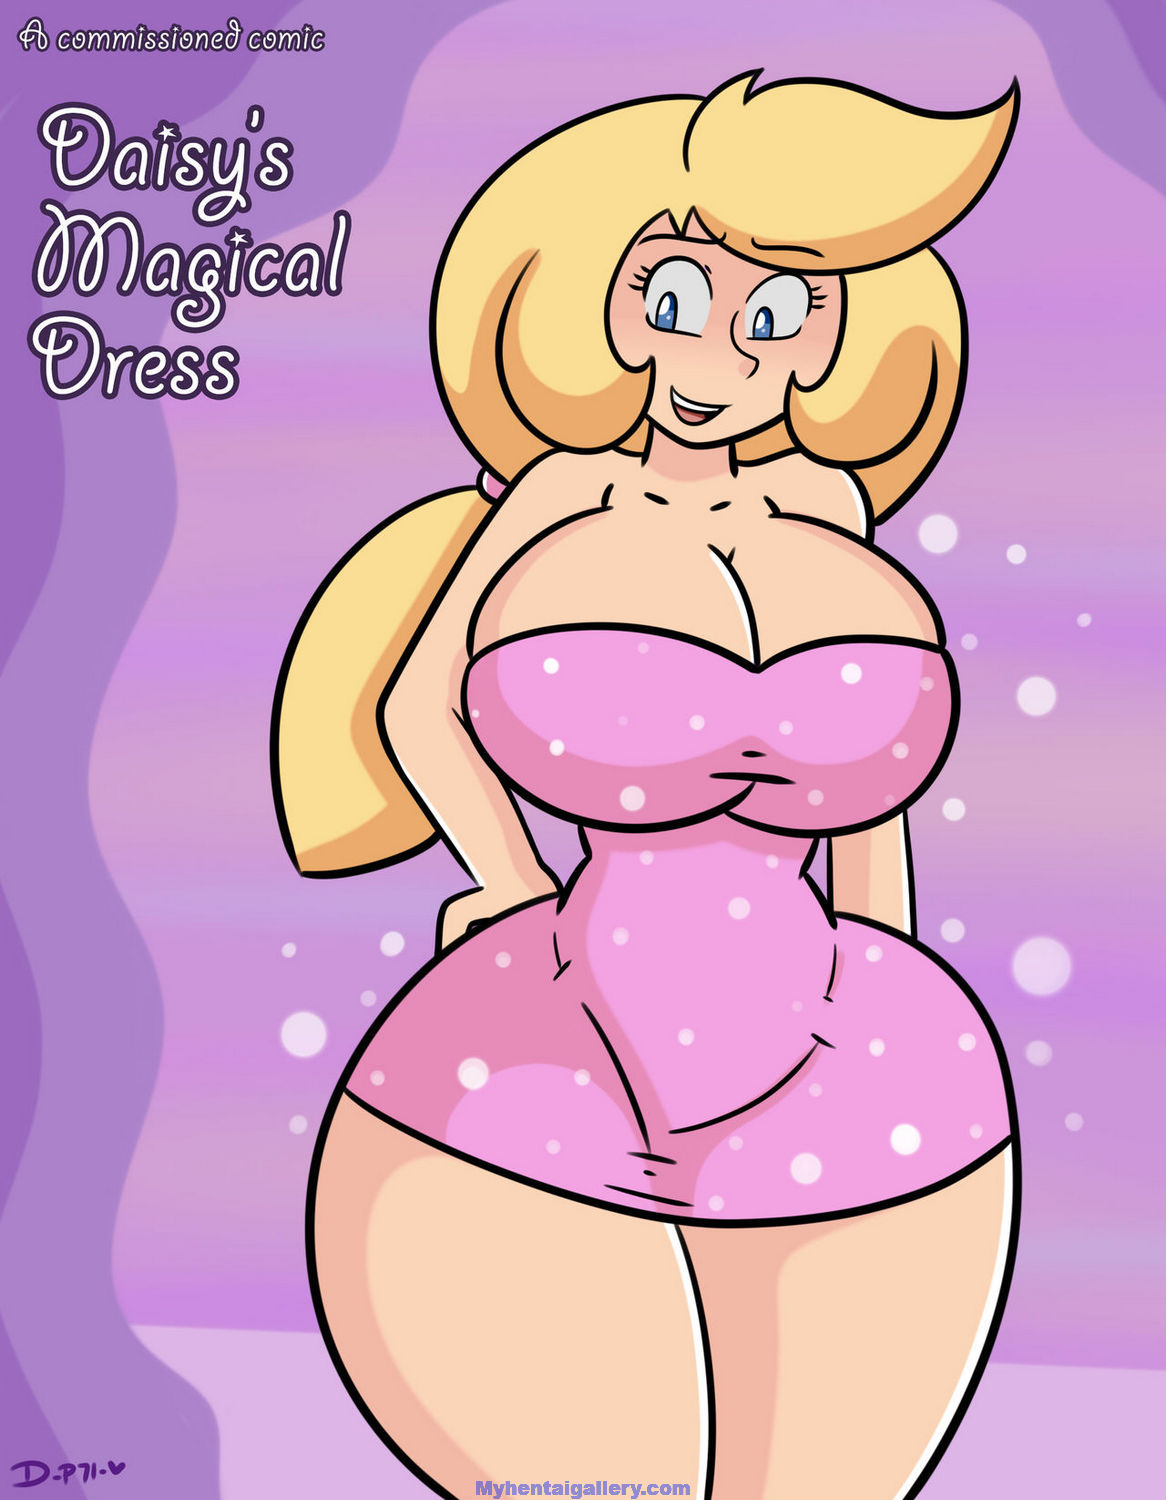 Daisy's Magical Dress